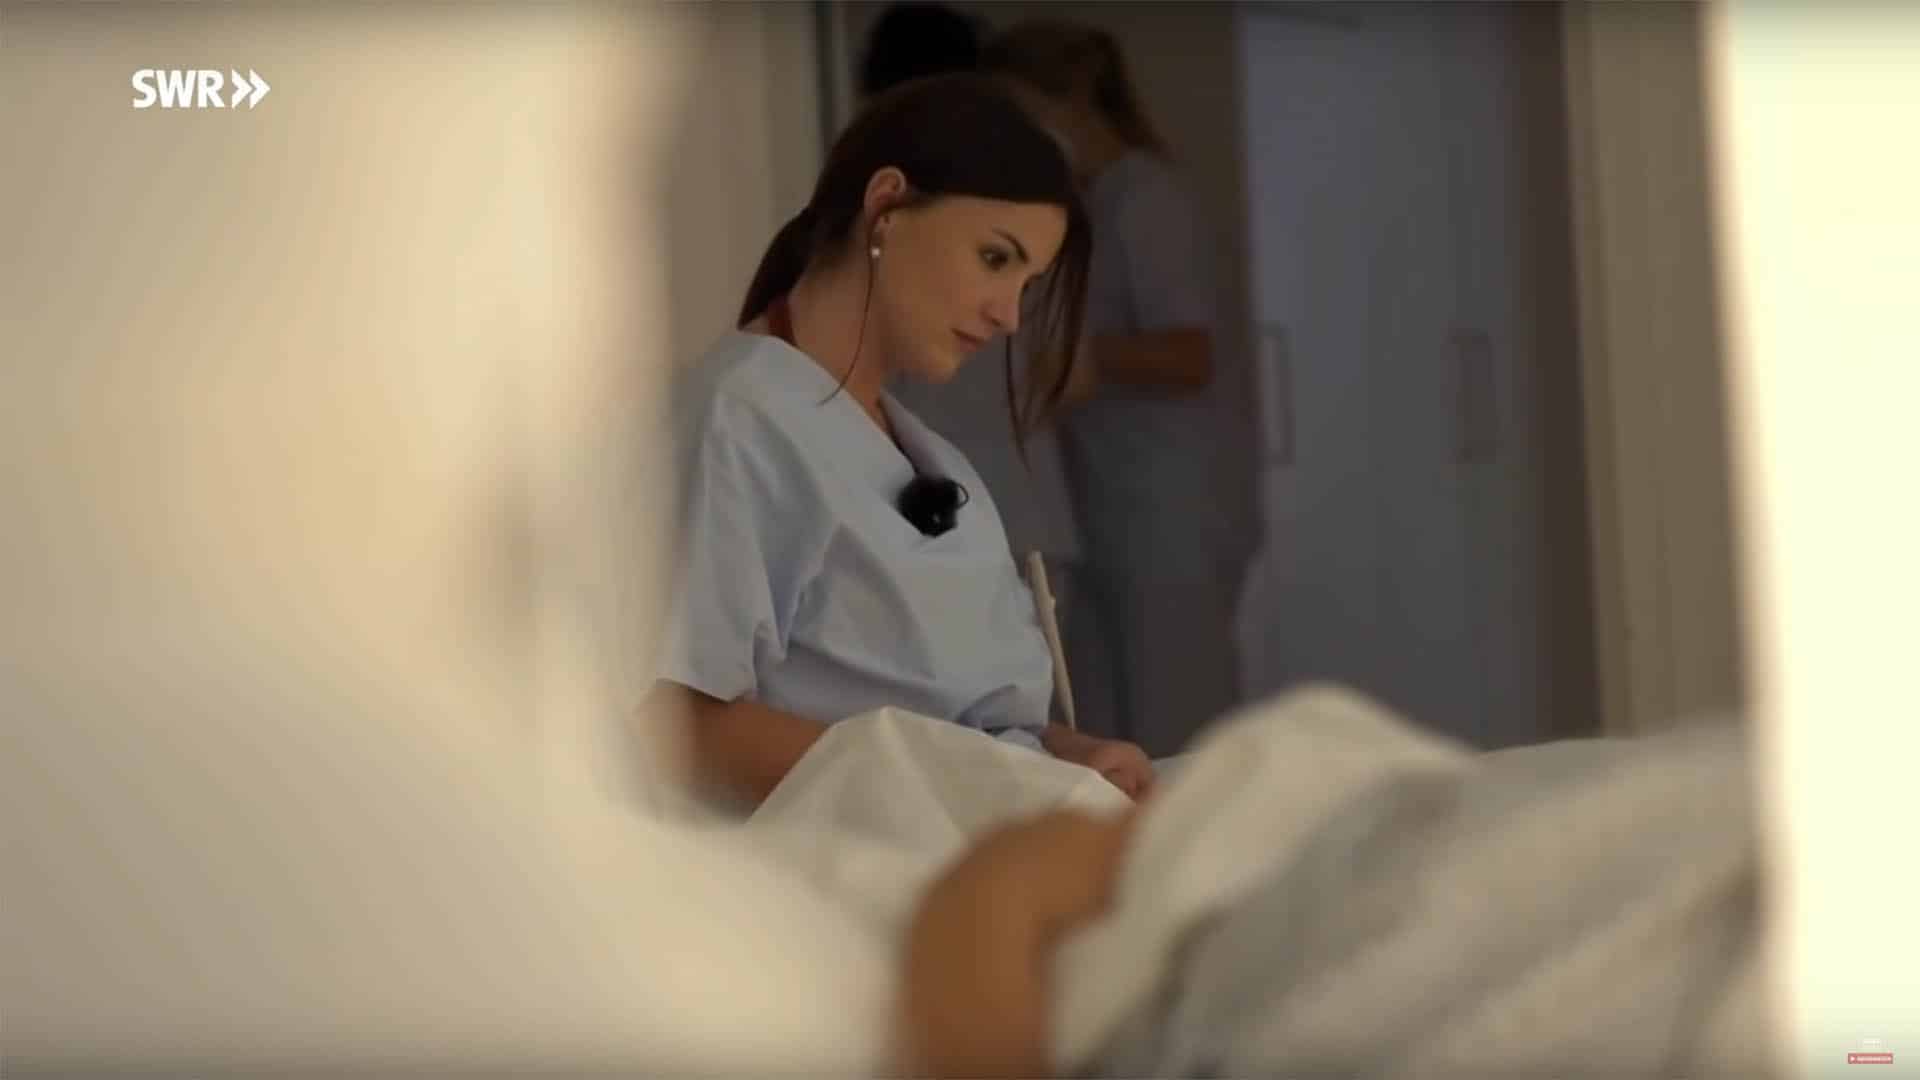 Für die SWR-Dokumentation „7 Tage... In der Abtreibungsklinik“ besuchte eine Journalistin eine Abtreibungsklinik im Süden Deutschlands